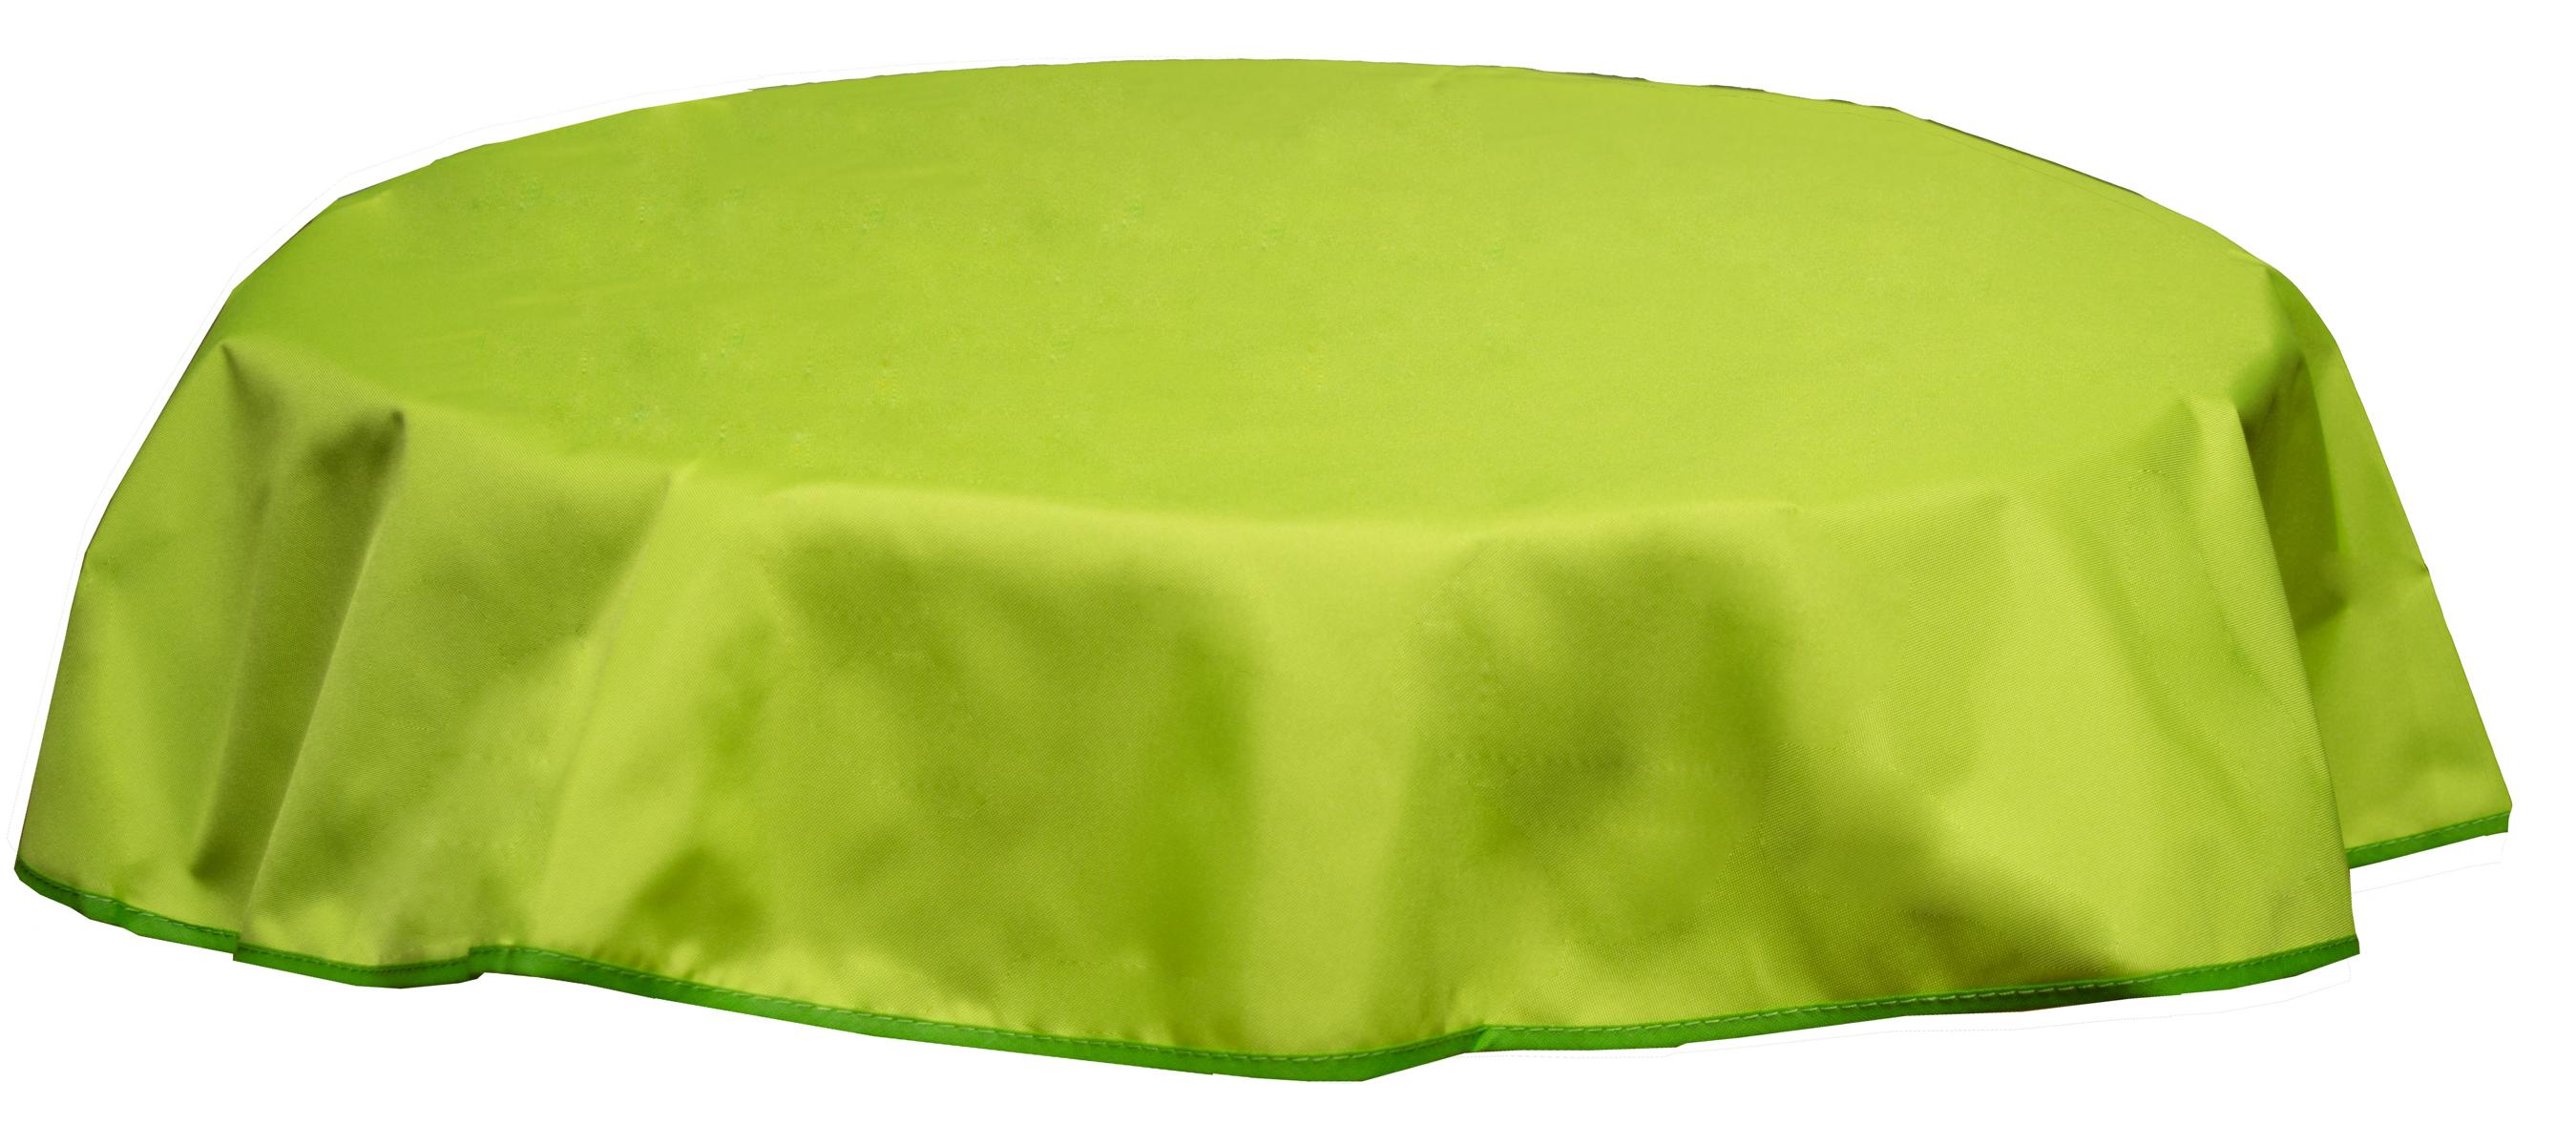 Runde Tischdecke 120cm wasserabweisend 100% Polyester in hellgrün